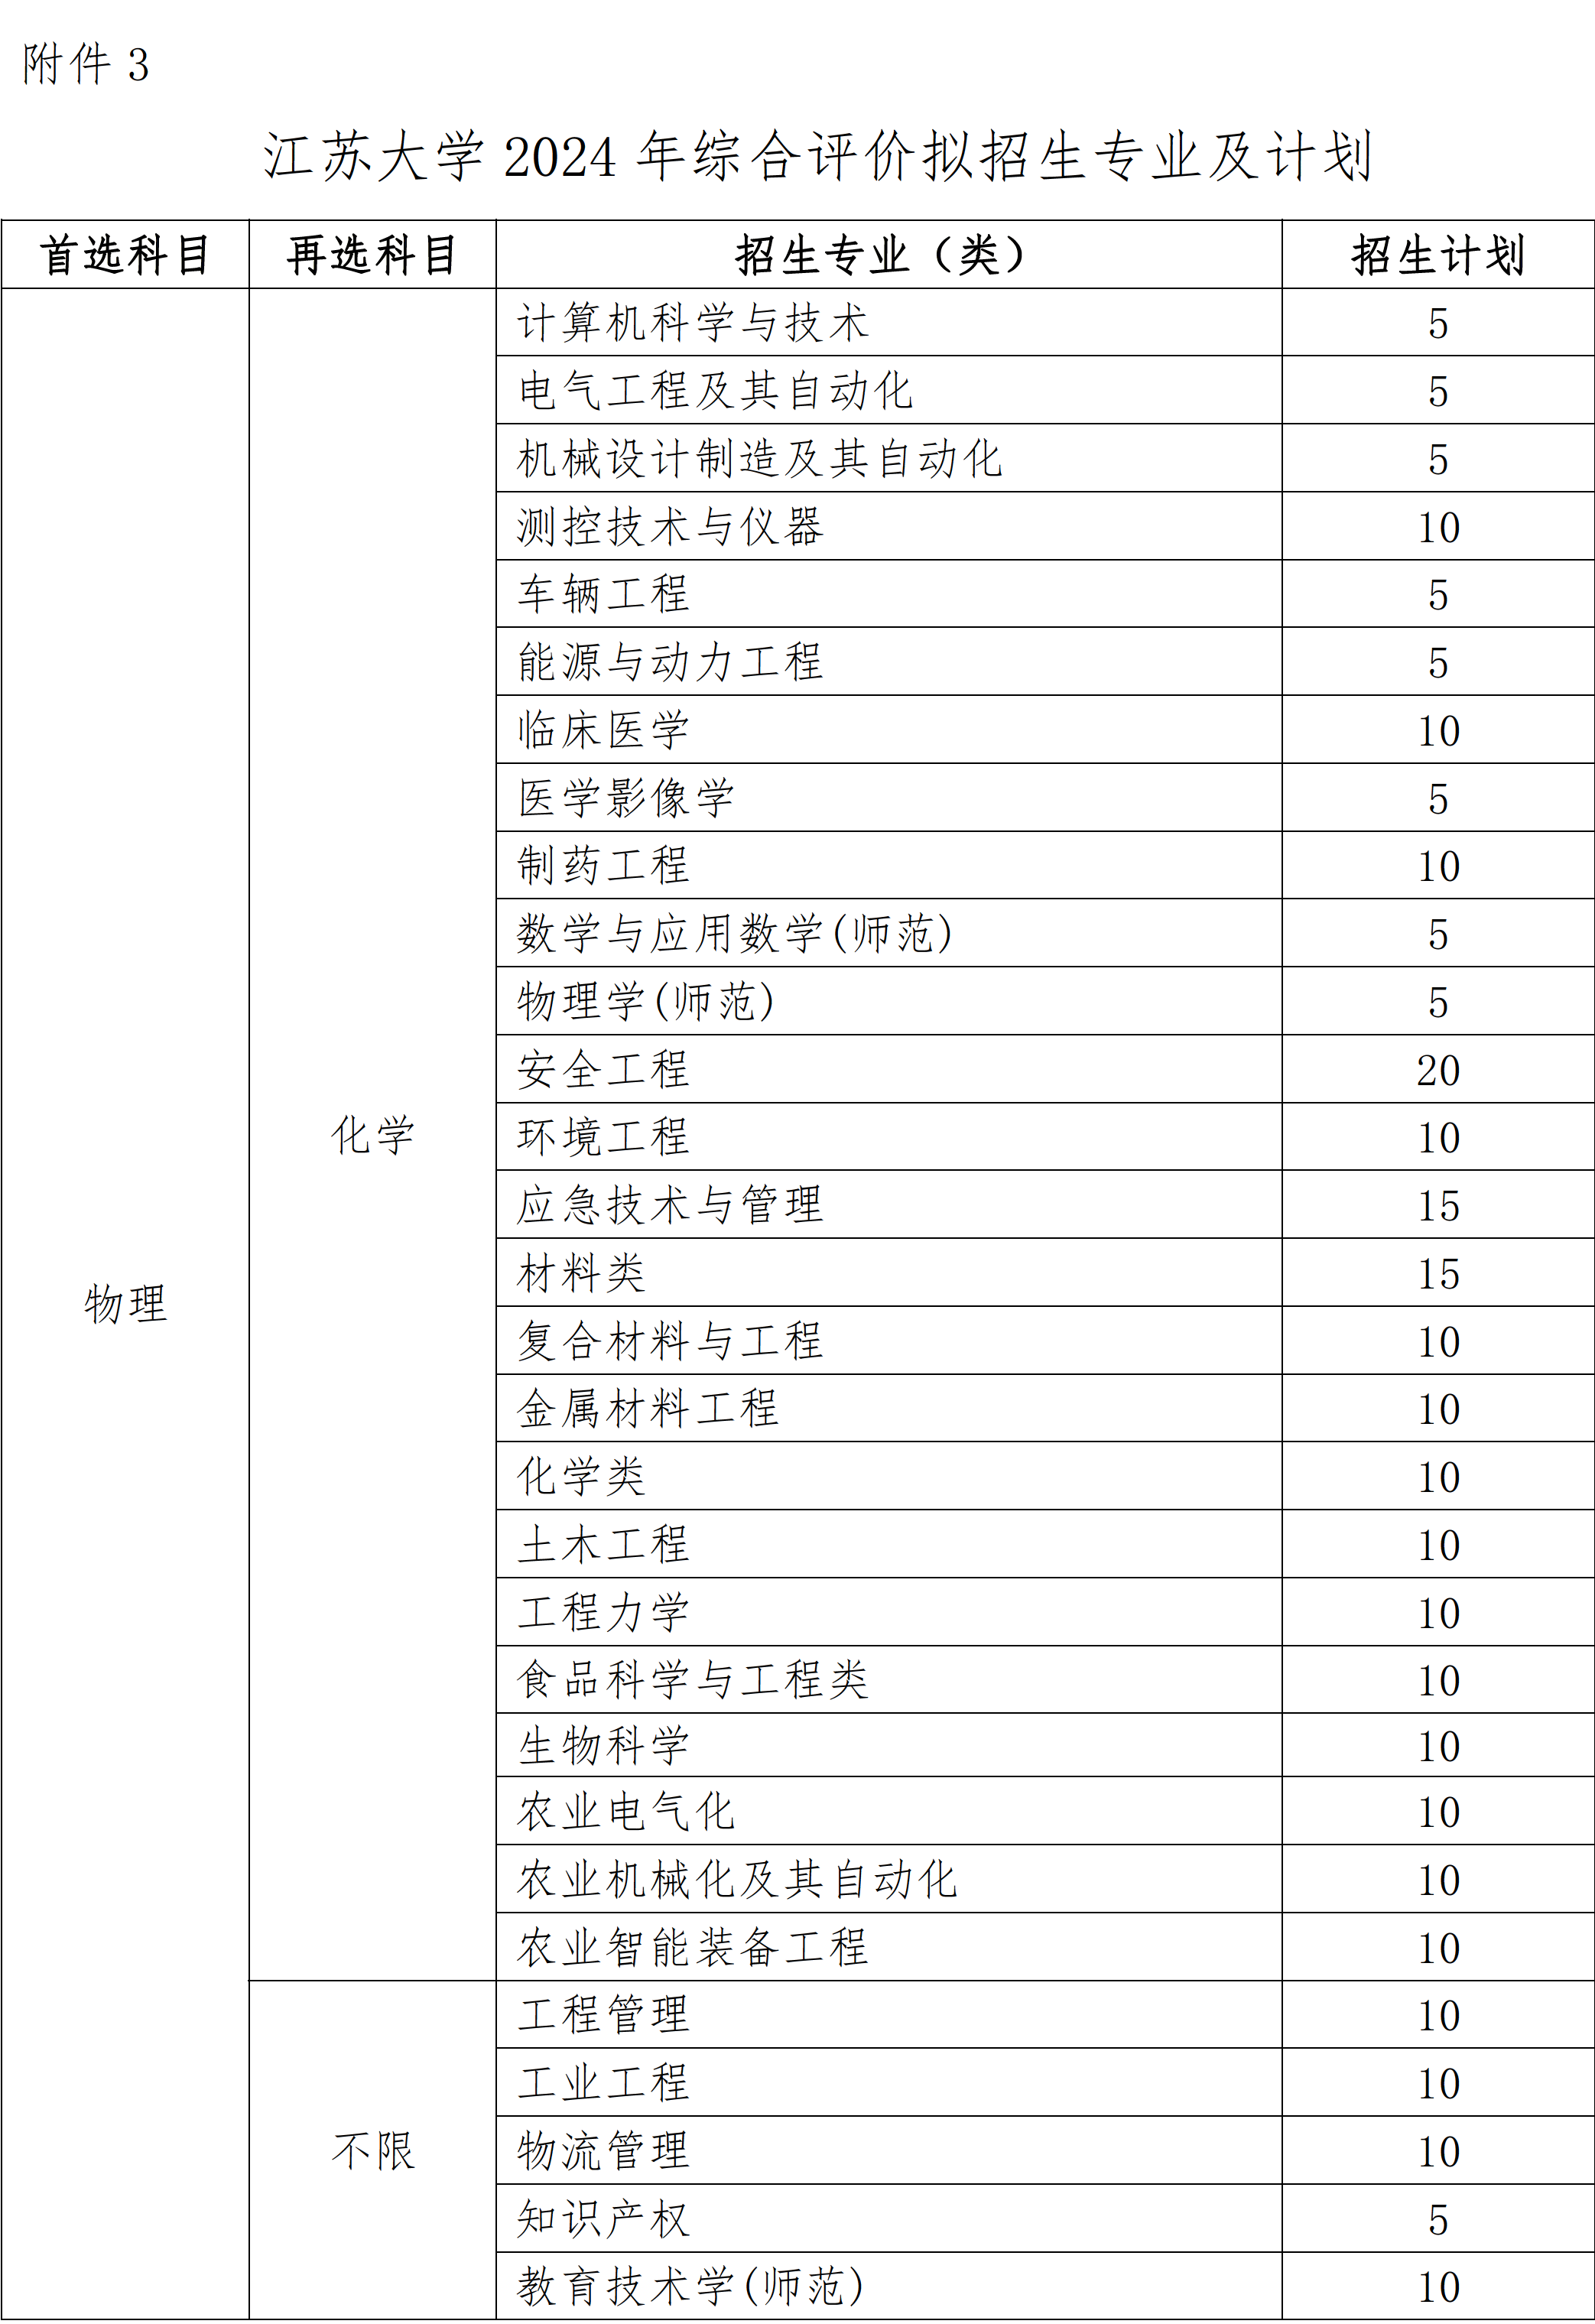 附件3：江苏大学2024年综合评价拟招生专业及计划 - 0001.png